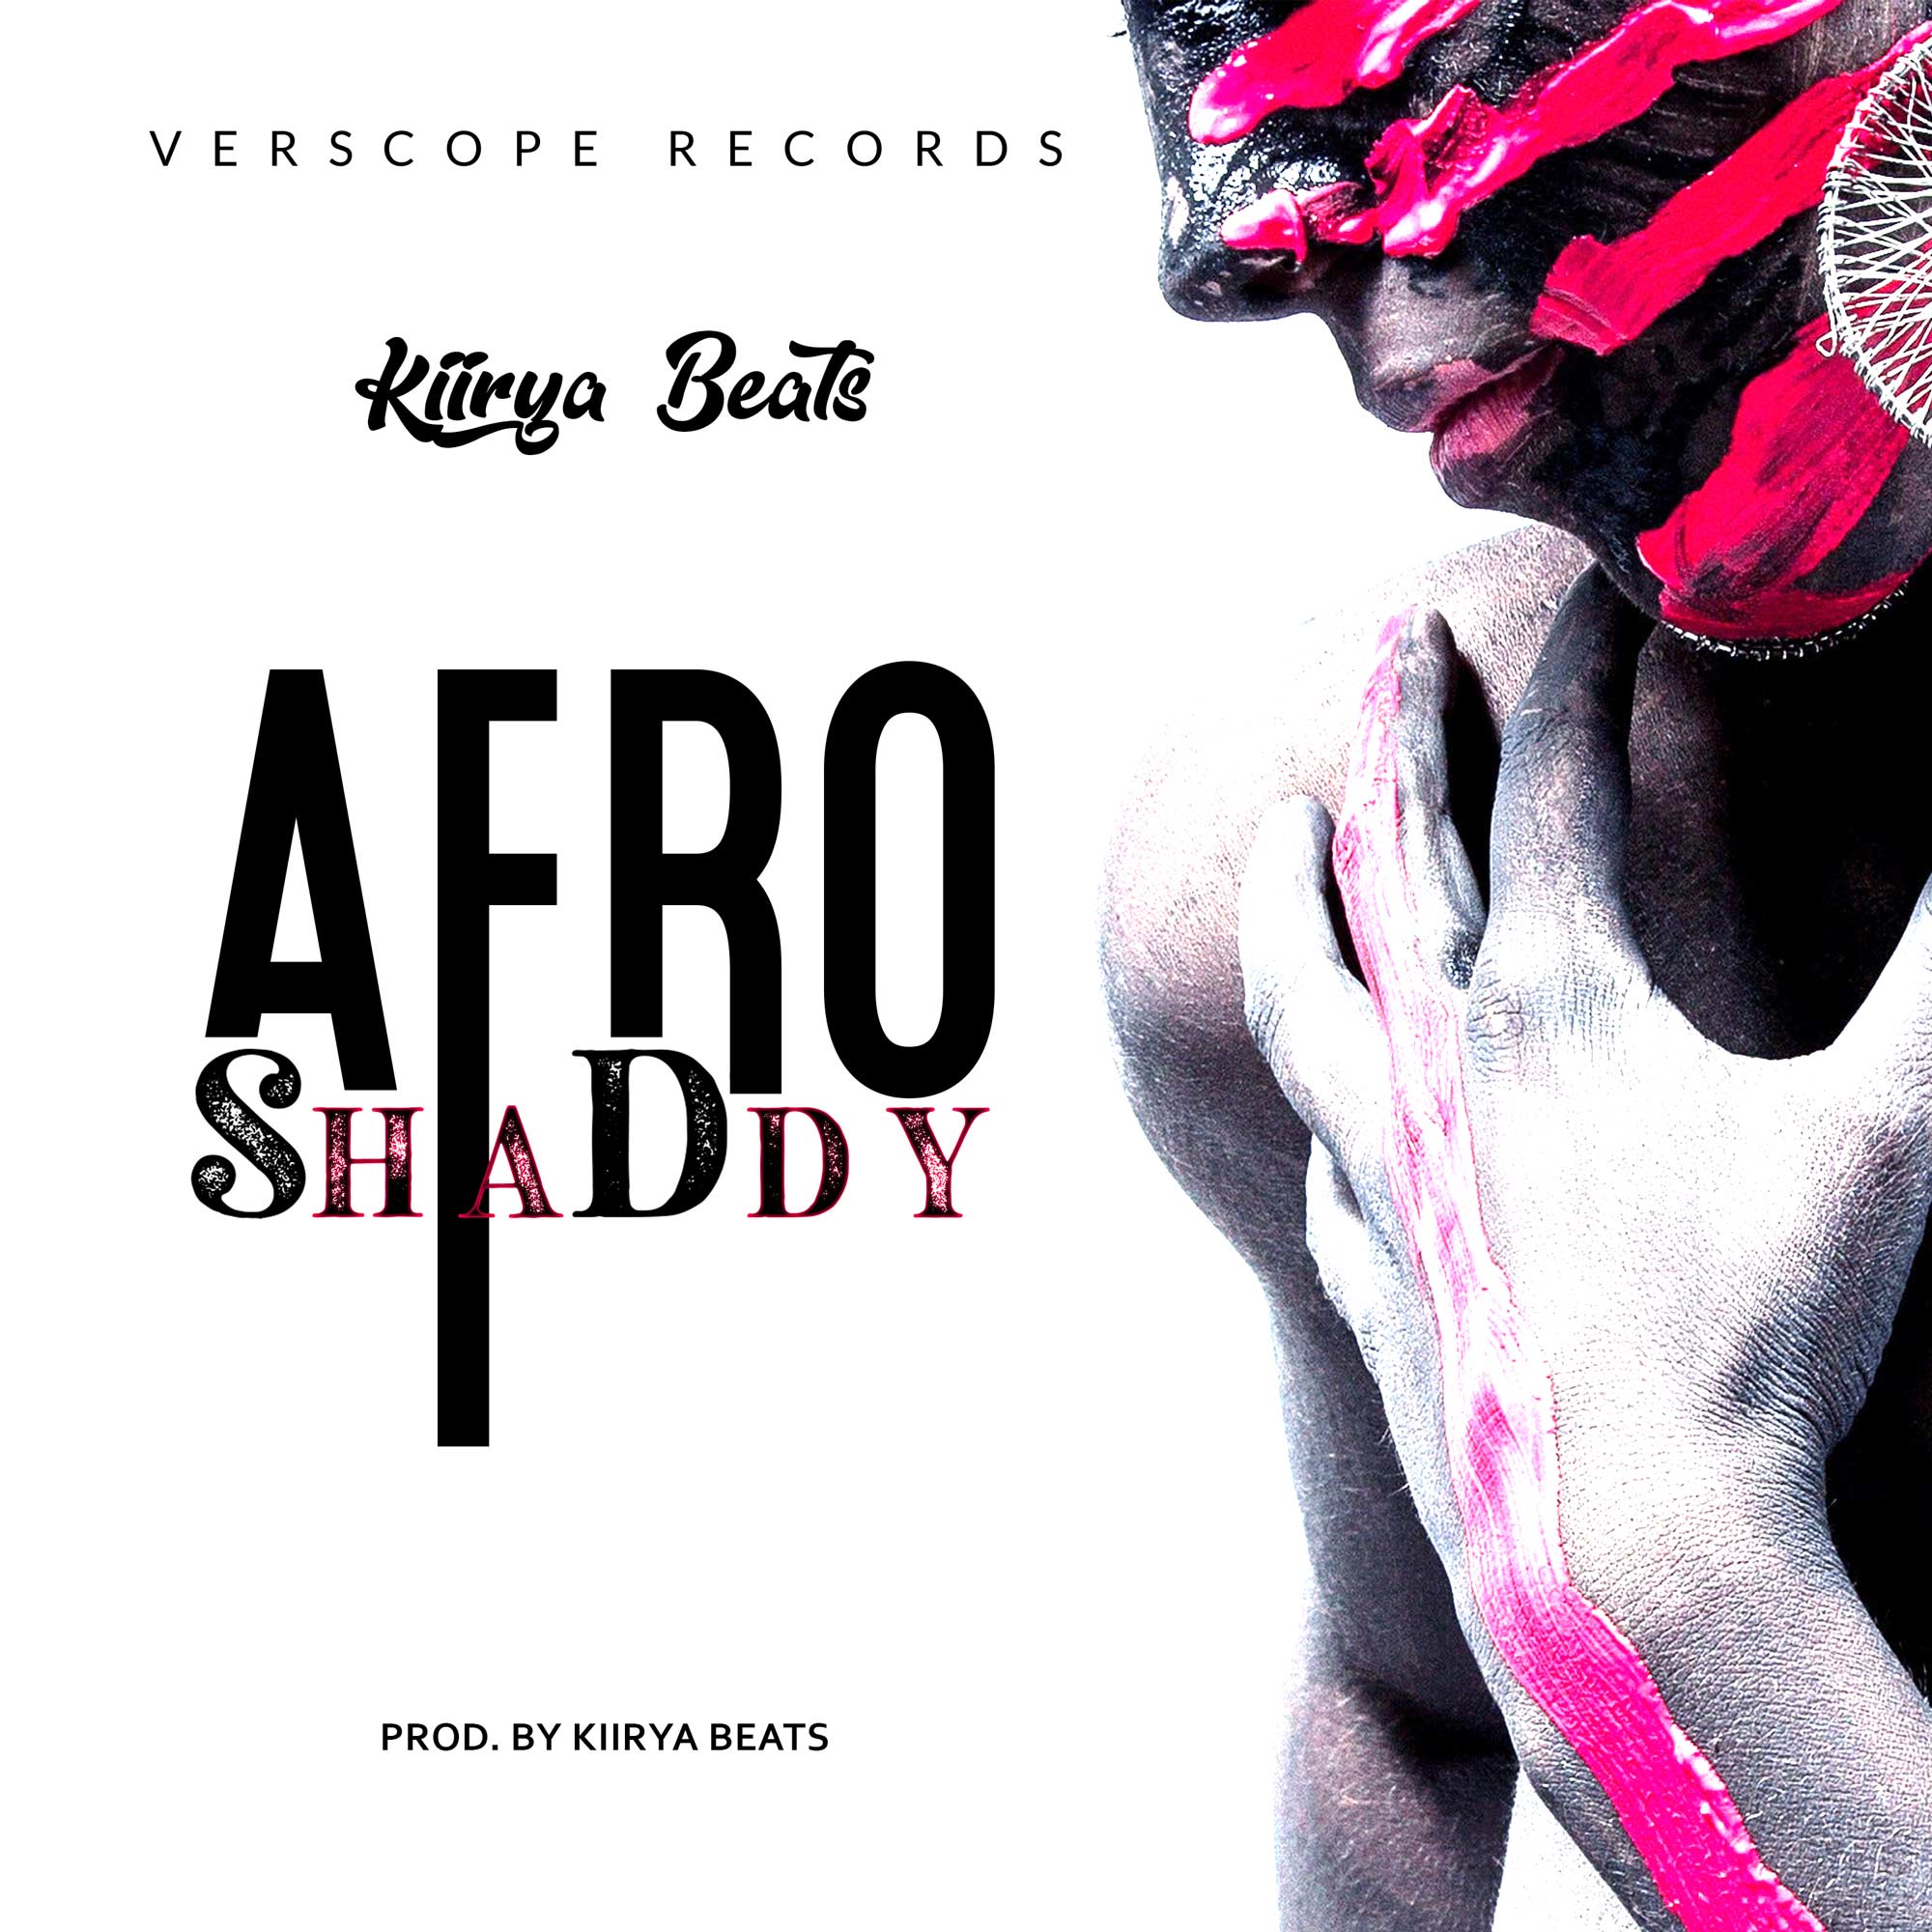 Kiirya Beats Afro Shaddy